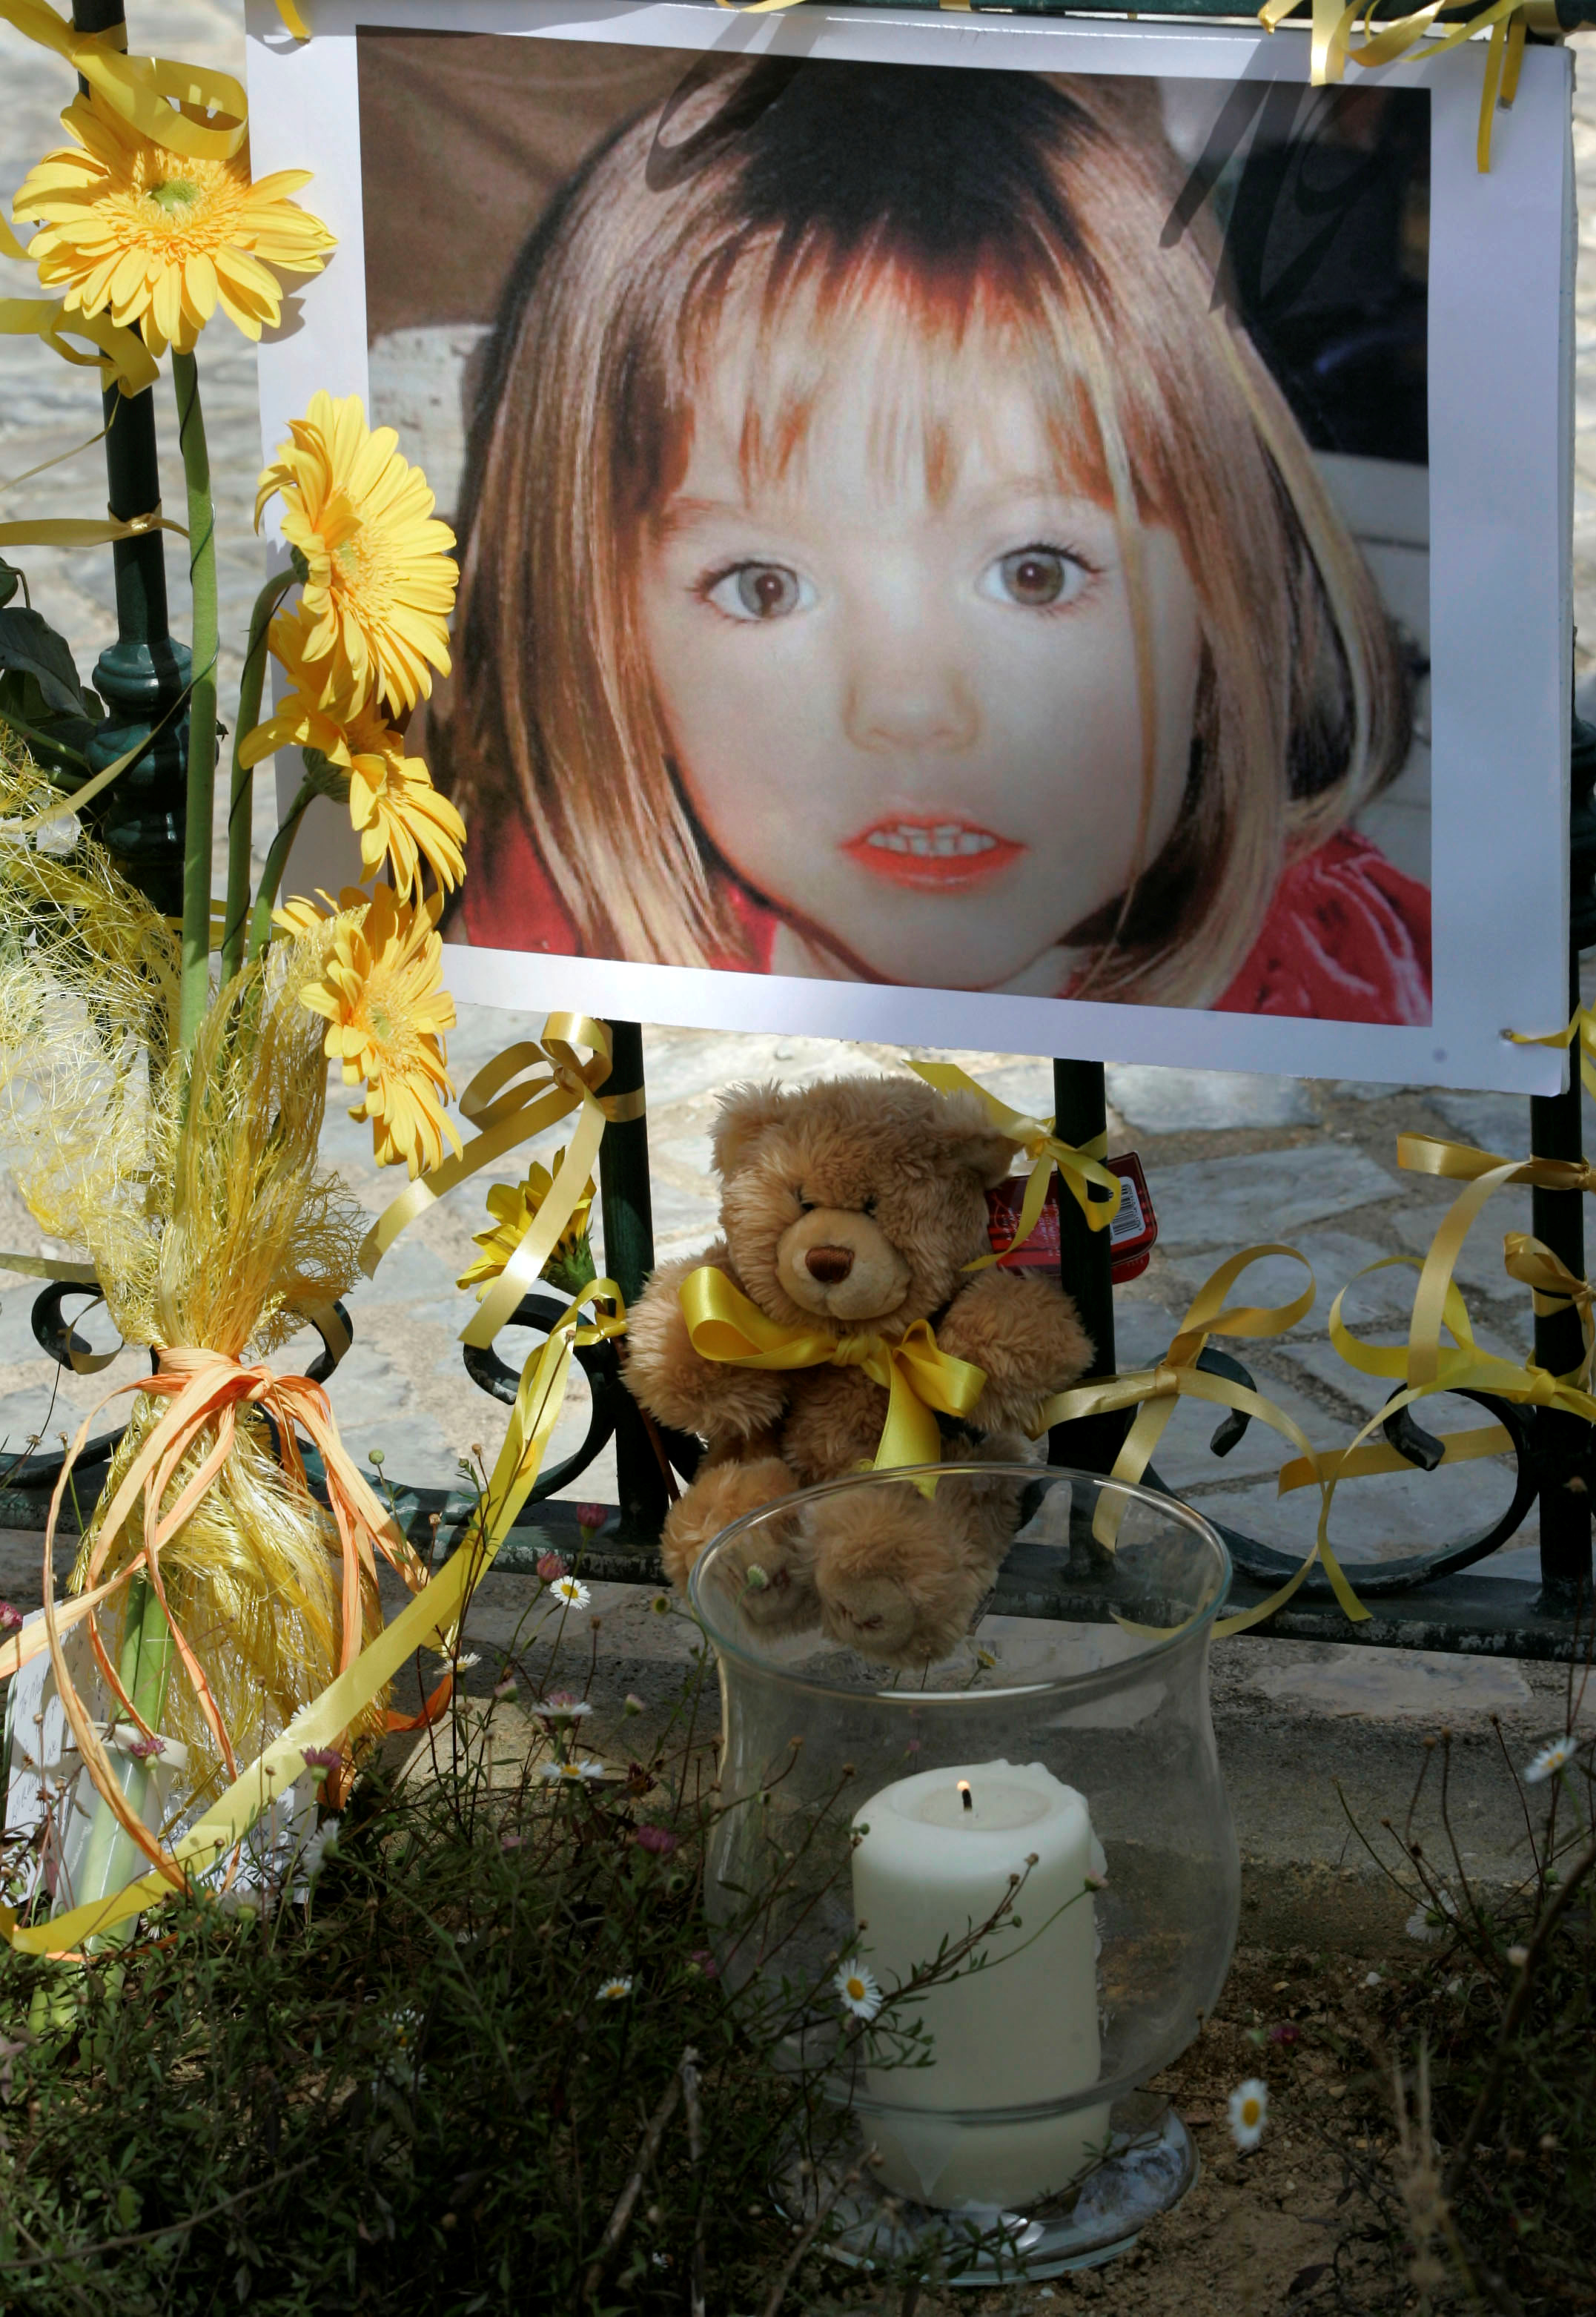 El póster de la niña británica de tres años desaparecida Madeleine McCann está rodeada de flores y arcos de esperanza en el balneario portugués de Lagos el 12 de mayo de 2007. REUTERS/Hugo Correia/File Photo